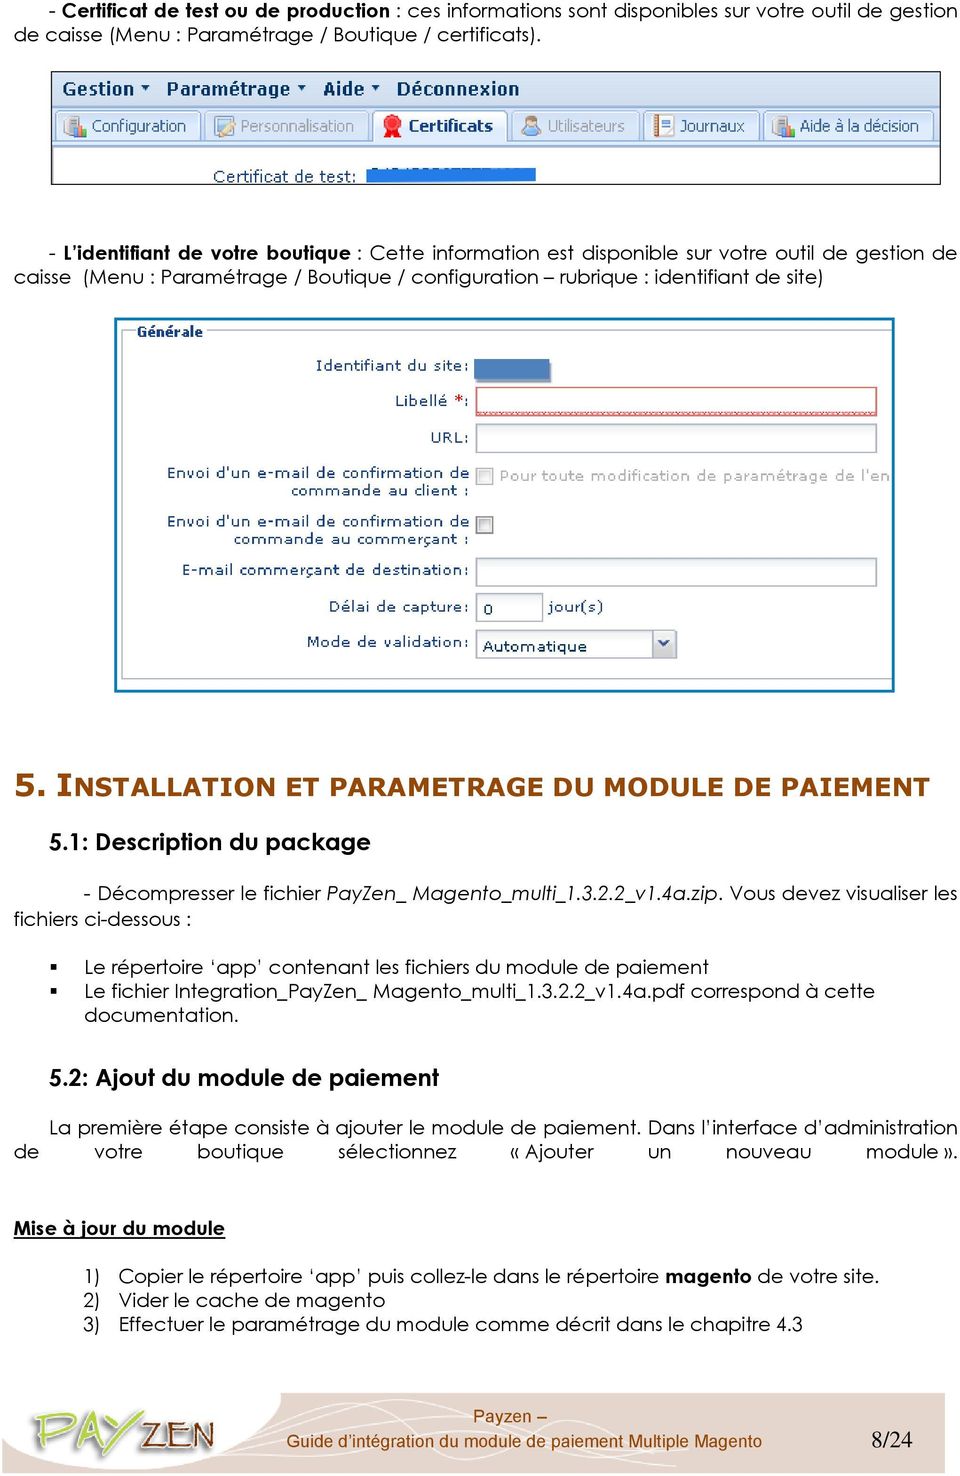 INSTALLATION ET PARAMETRAGE DU MODULE DE PAIEMENT 5.1: Description du package - Décompresser le fichier PayZen_ Magento_multi_1.3.2.2_v1.4a.zip.